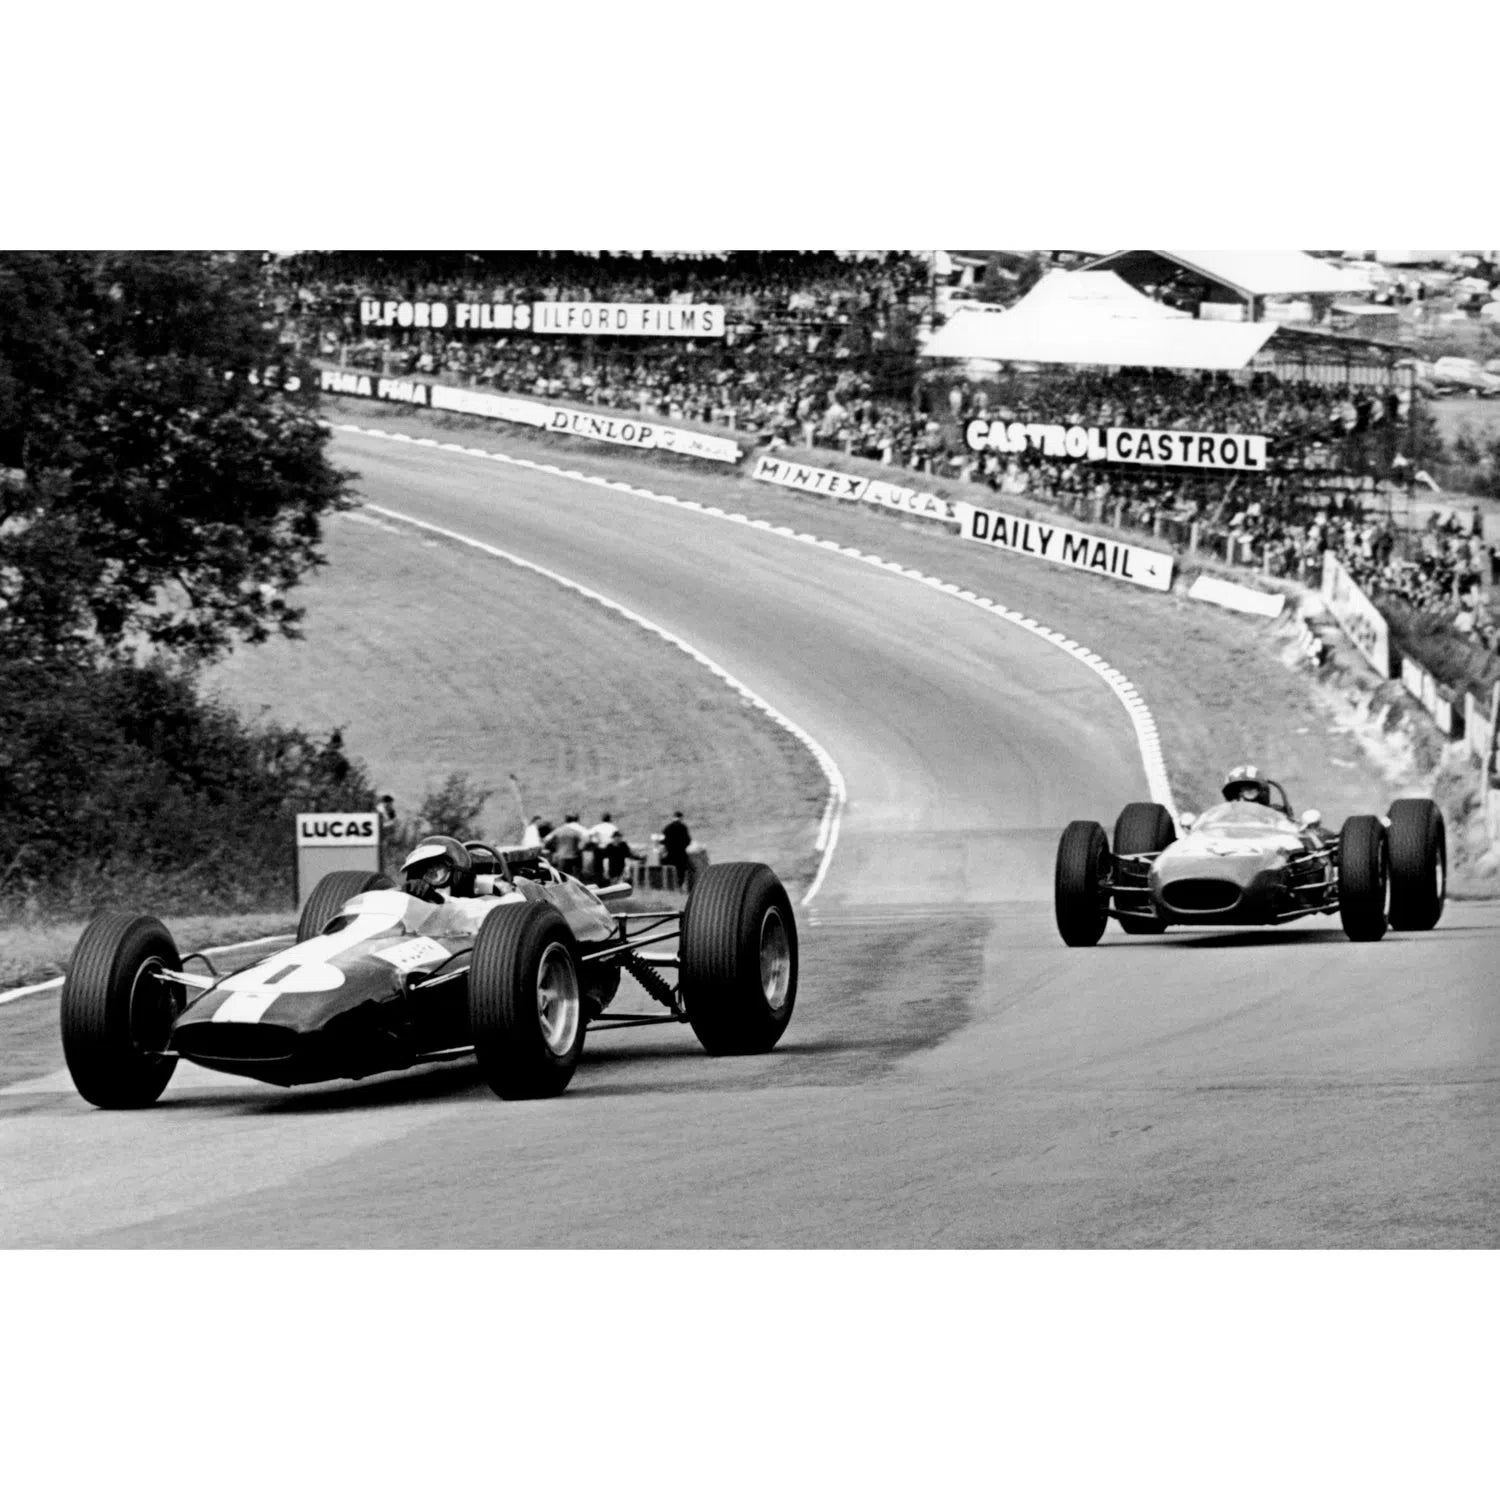 Jim Clarck au GP de Grande-Bretagne (1964)-Imagesdartistes